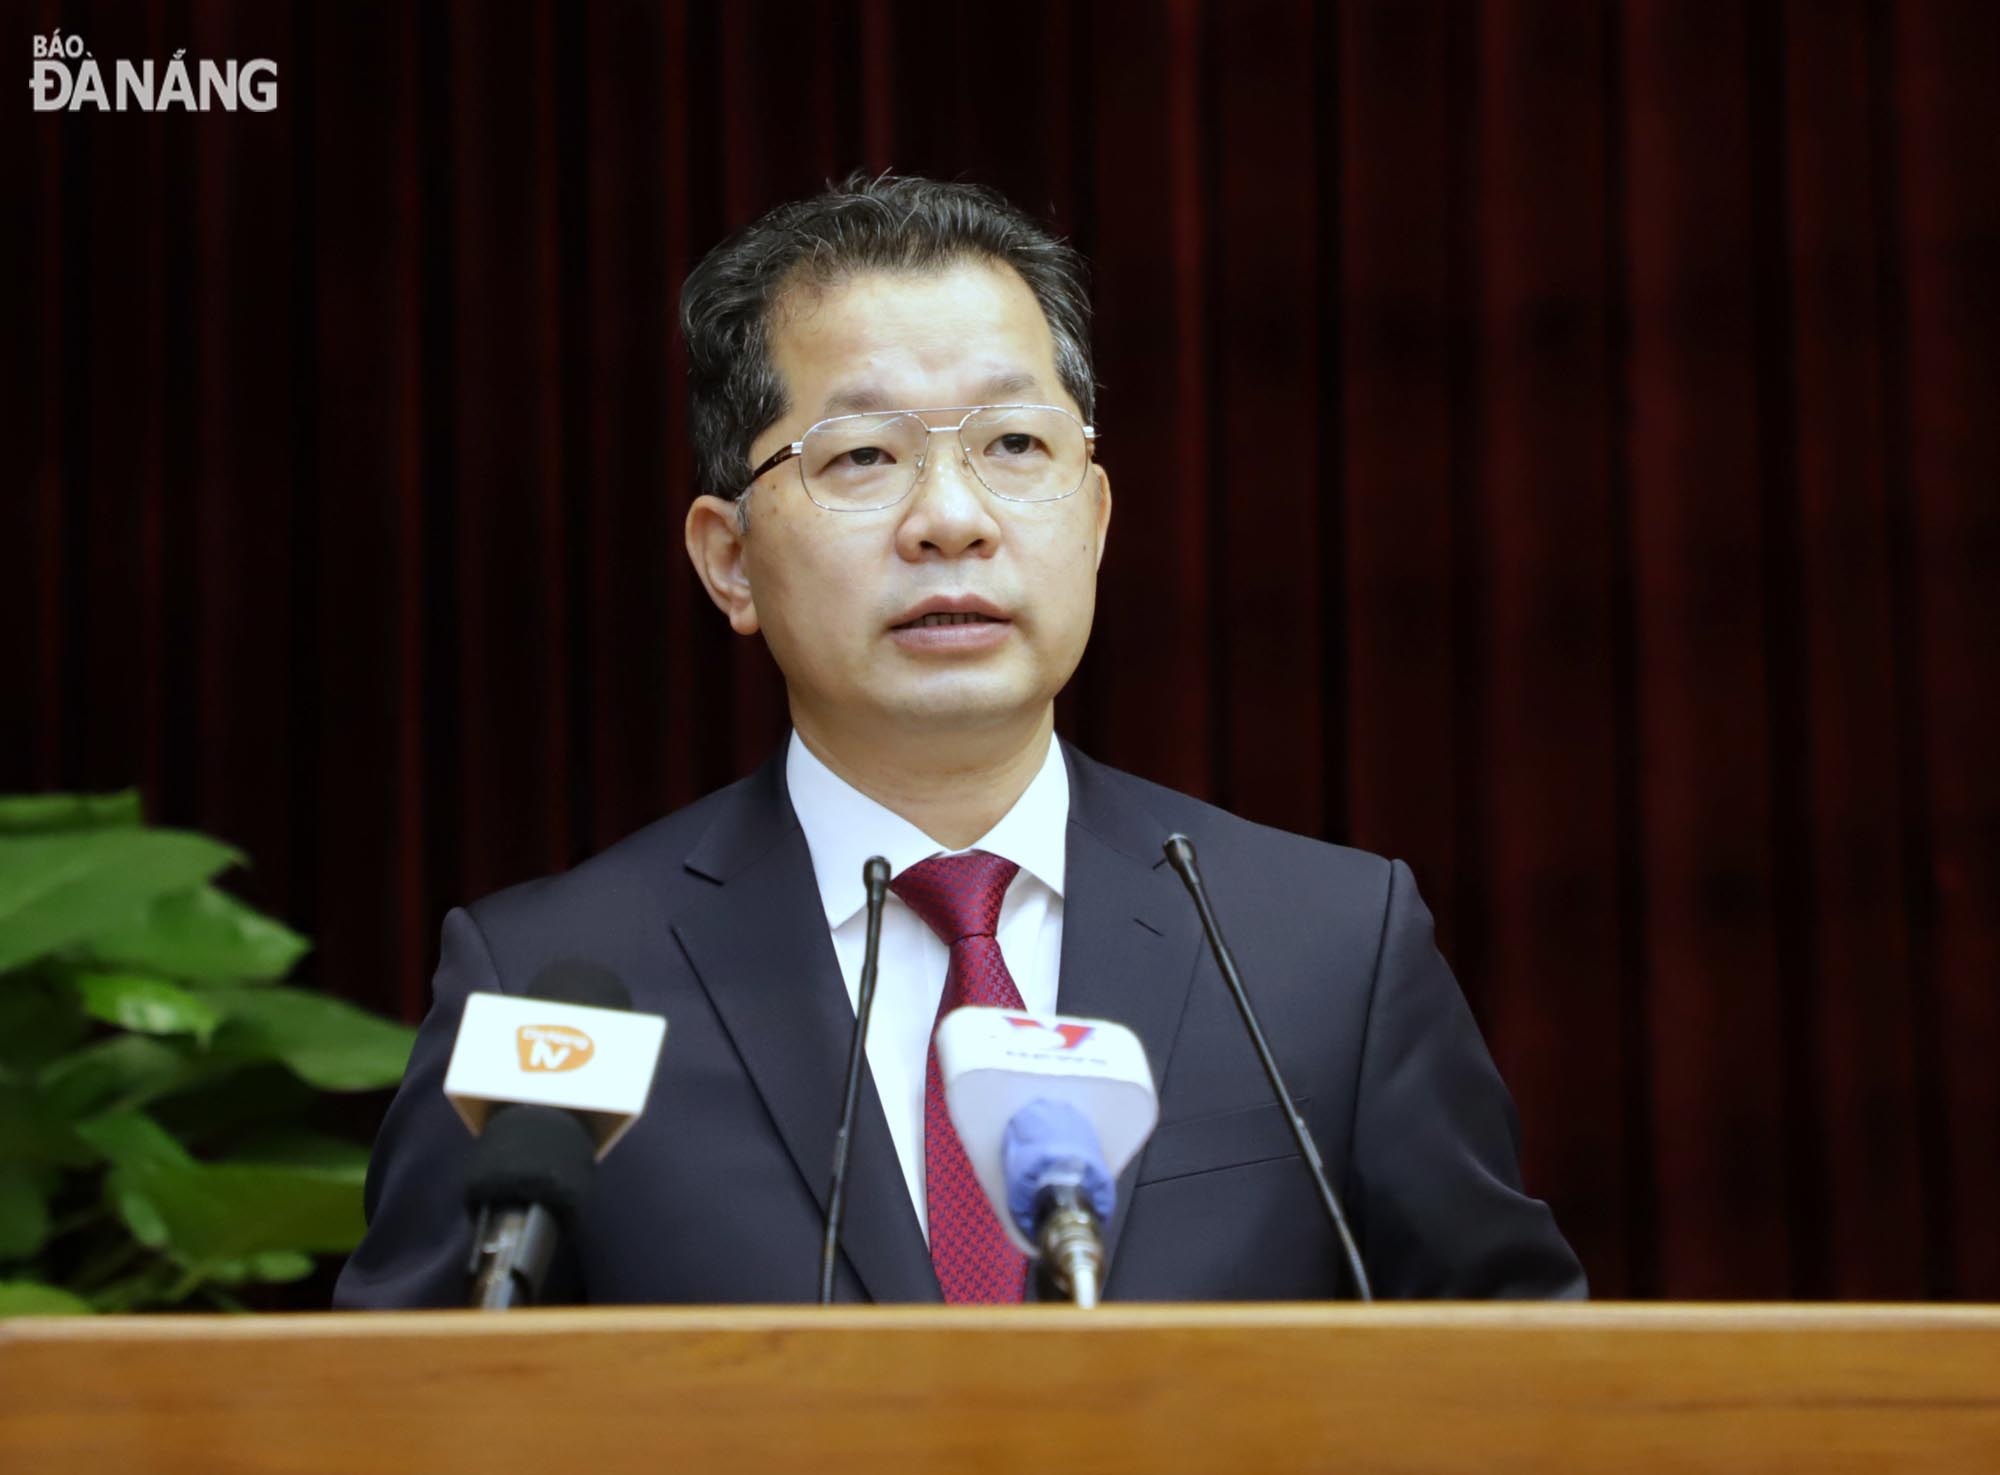 Bí thư Thành ủy Nguyễn Văn Quảng phát biểu chỉ khai mạc hội nghị. Ảnh: NGỌC PHÚ